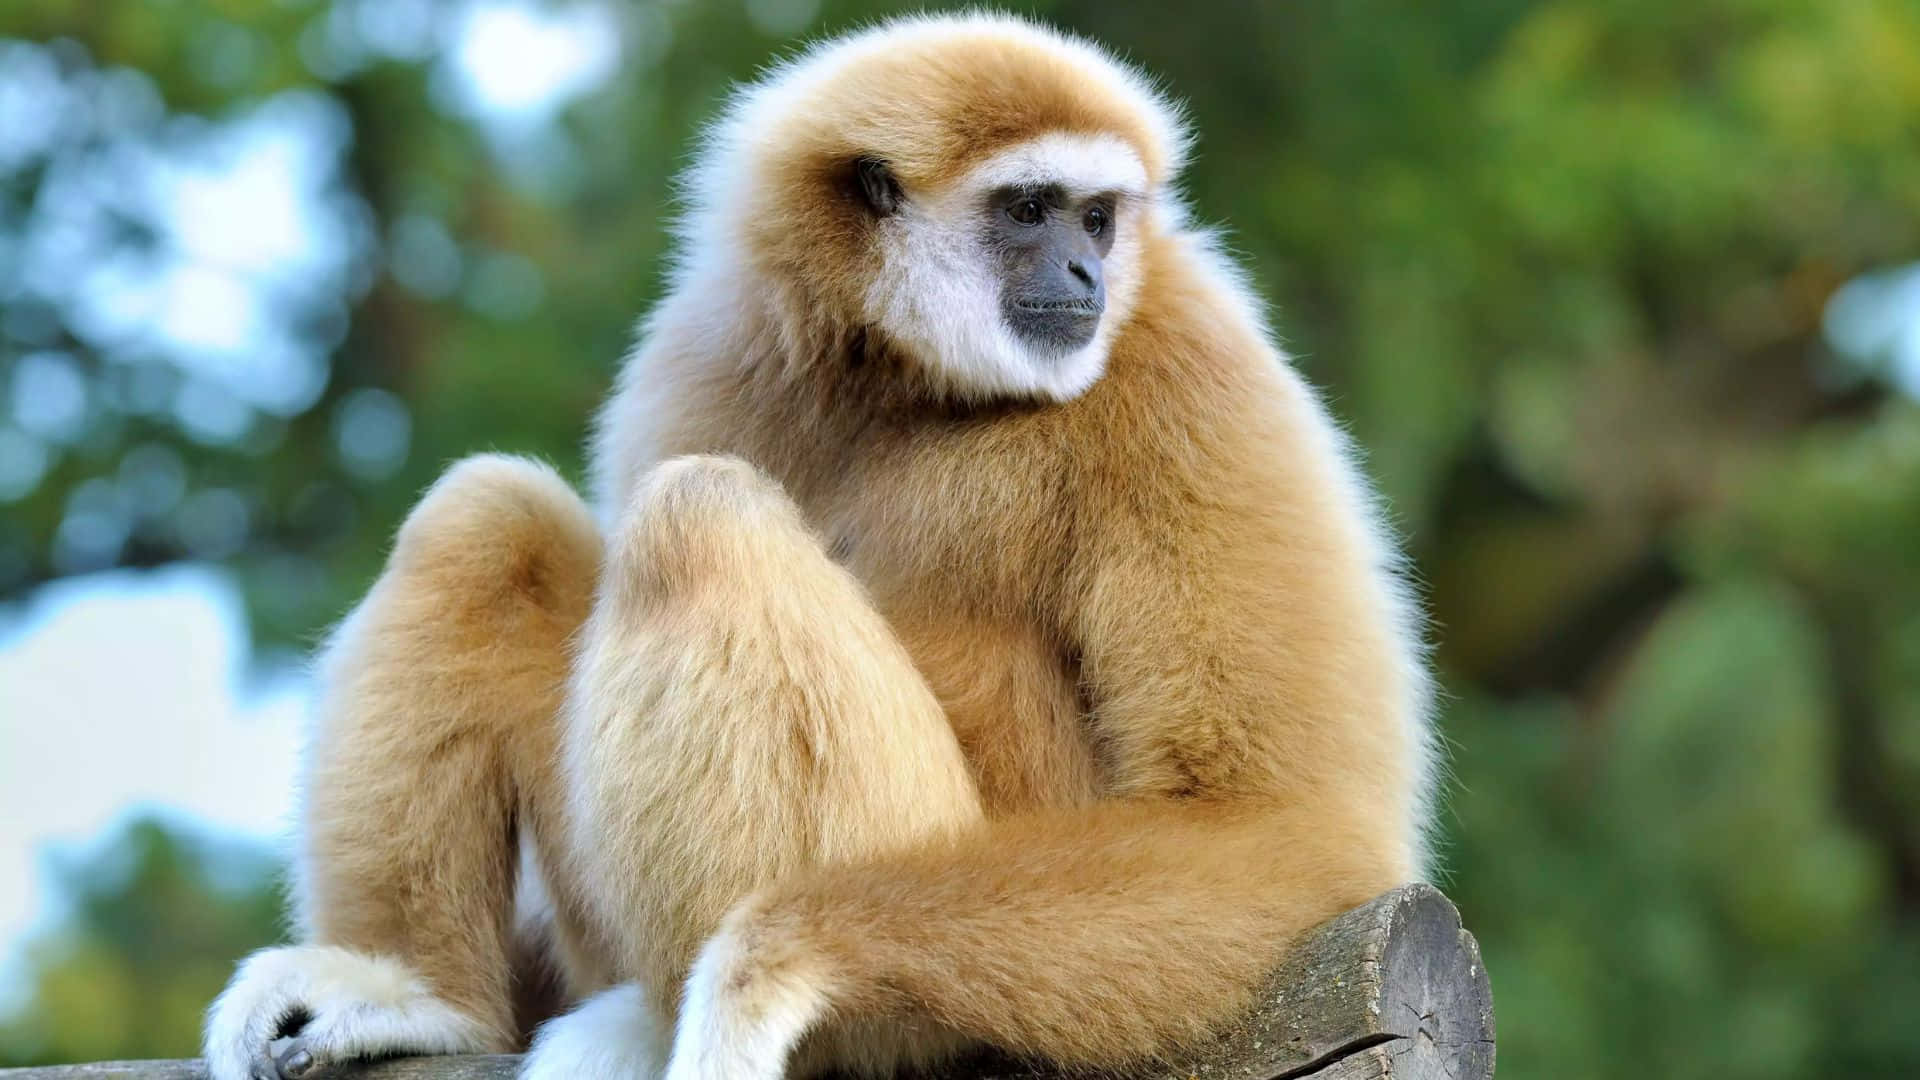 Unascimmia Gibbone Seduta Su Un Ramo D'albero A 1080p.